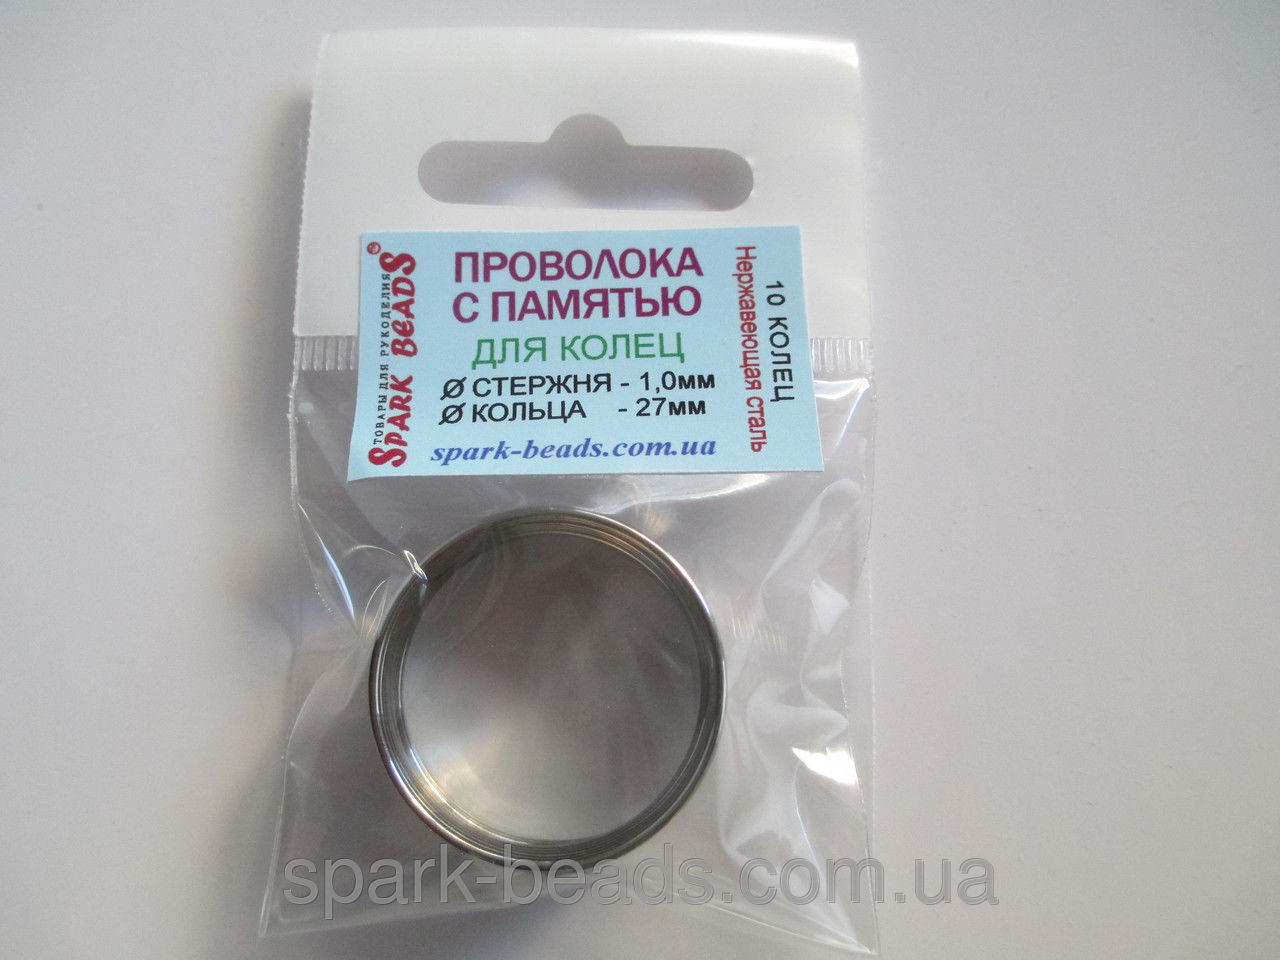 Проволока с памятью цвет серебро, диаметр кольца 27 мм, диаметр стержня проволоки 1 мм